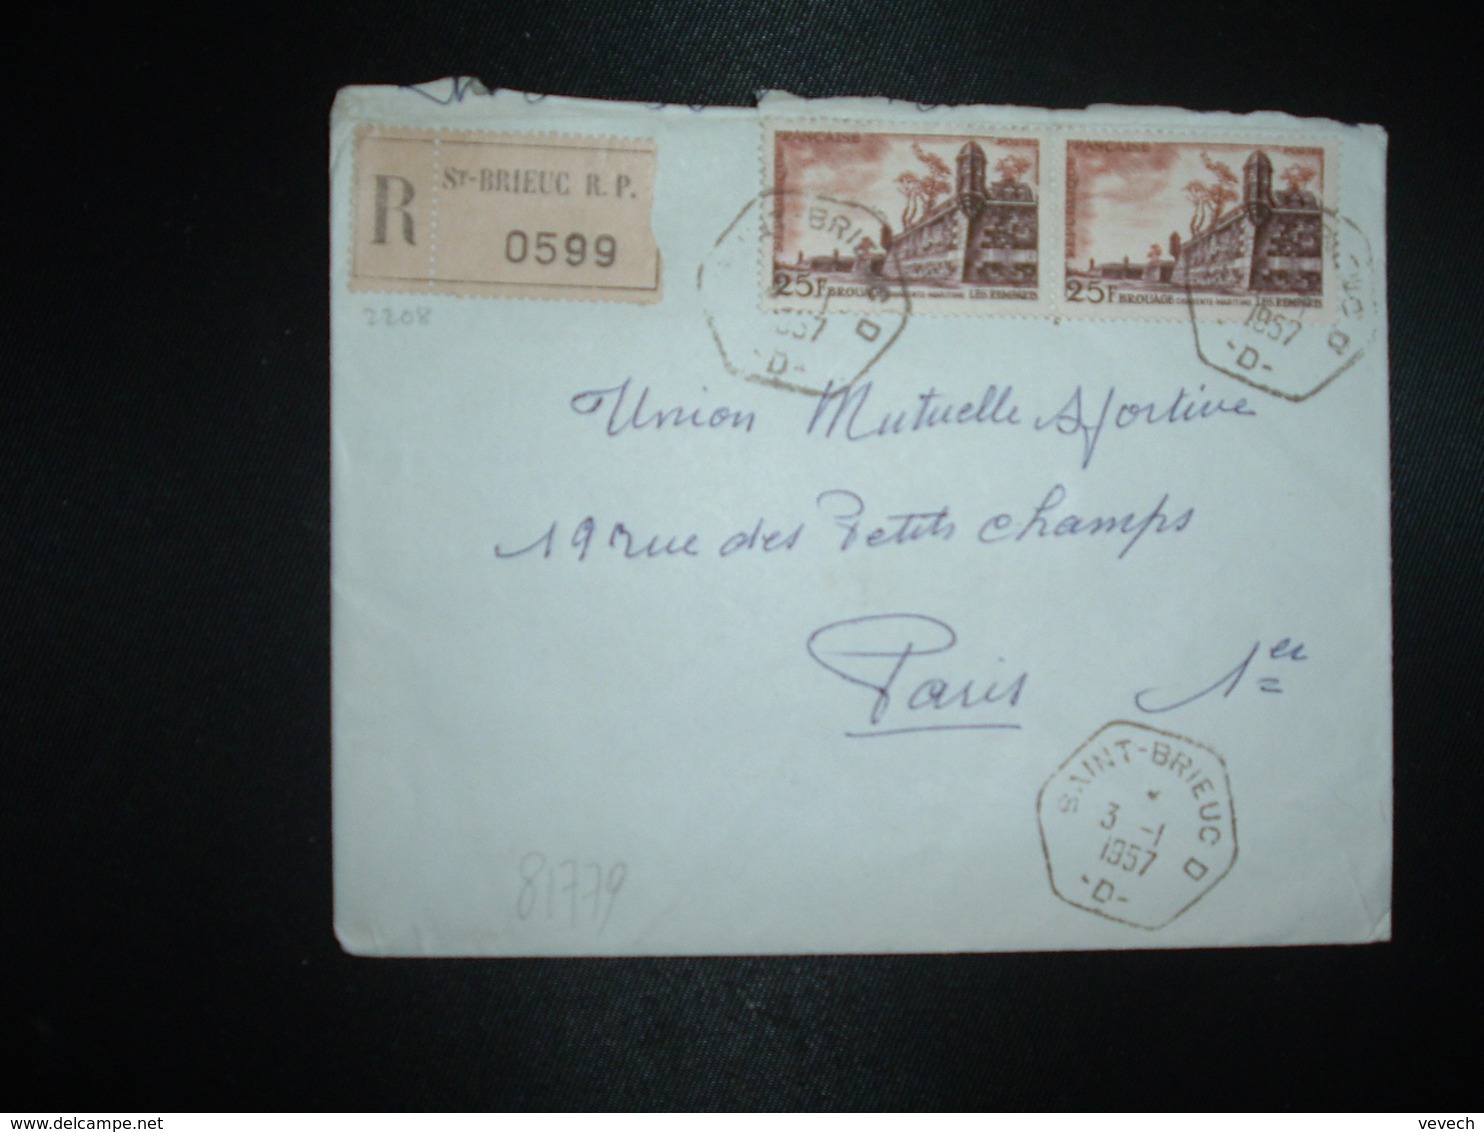 LR TP BROUAGE 25F Paire OBL. HEXAGONALE 3-1 1957 SAINT-BRIEUC D  -D- (22 COTES DU NORD) - Manual Postmarks